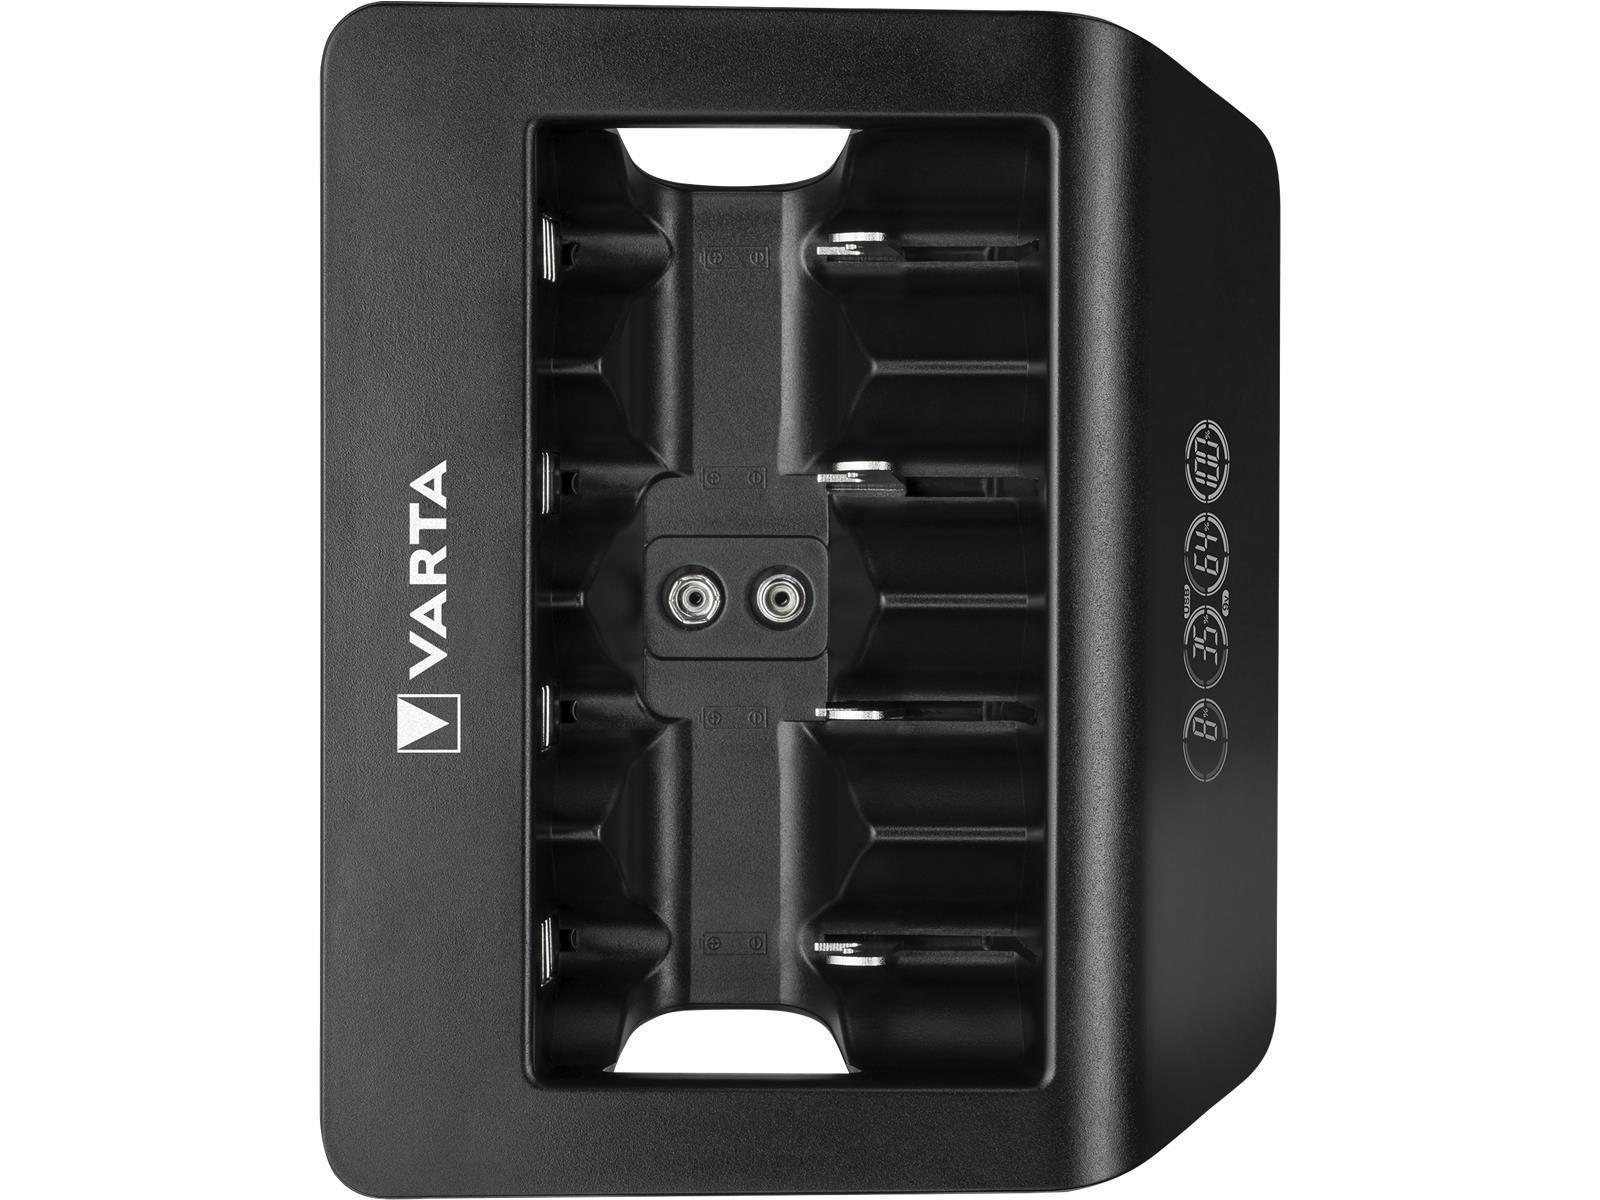 Universal-Ladegerät VARTA, Akku NiMH, LCD Charger, für AA/ AAA/ C/ D/ 9V